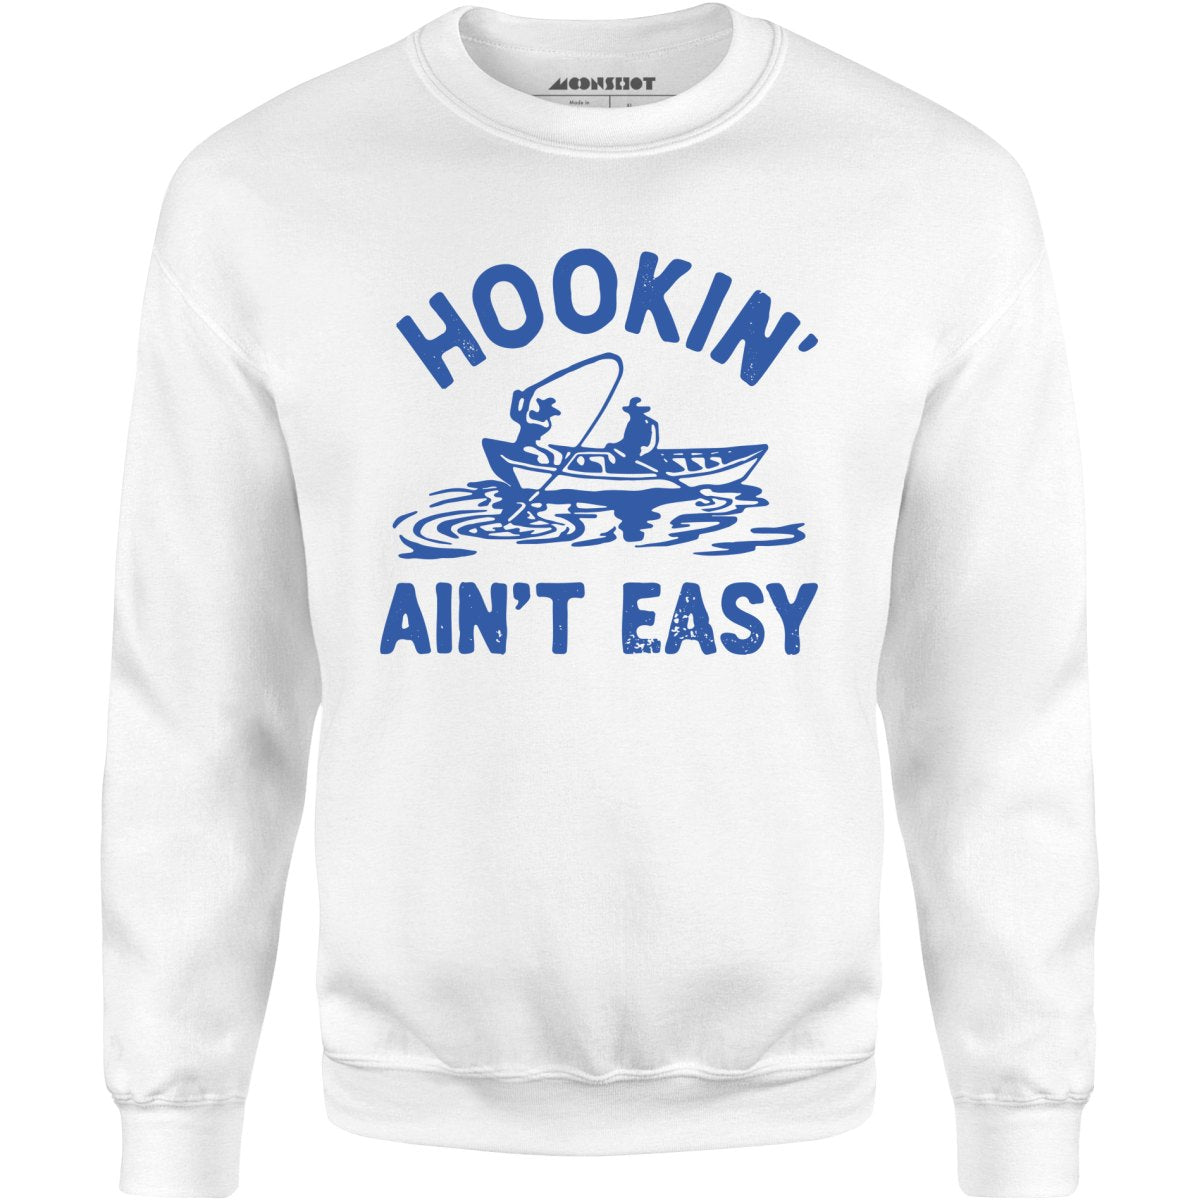 Hookin' Ain't Easy - Unisex Sweatshirt